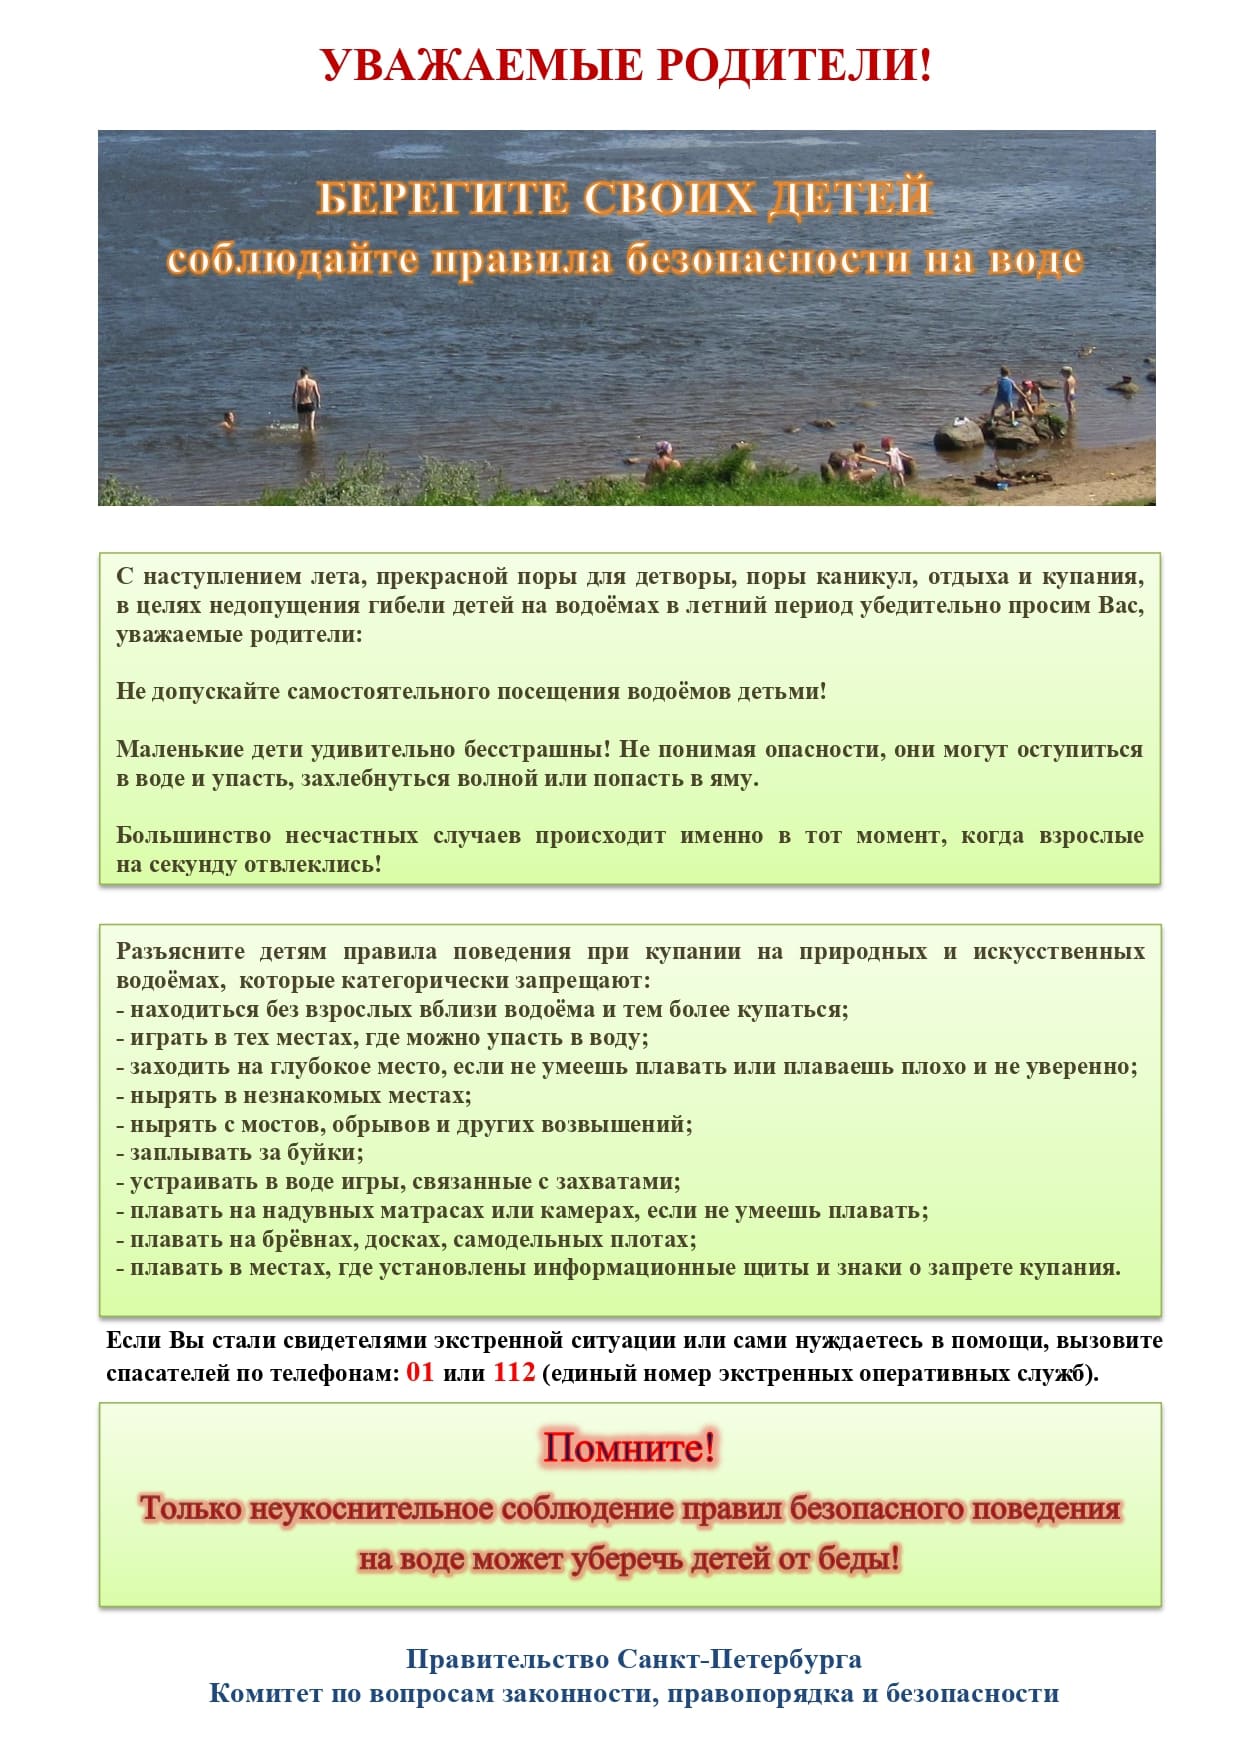 Памятка родителям по запрету купания в неотведённых местах 2021 page 0001 1